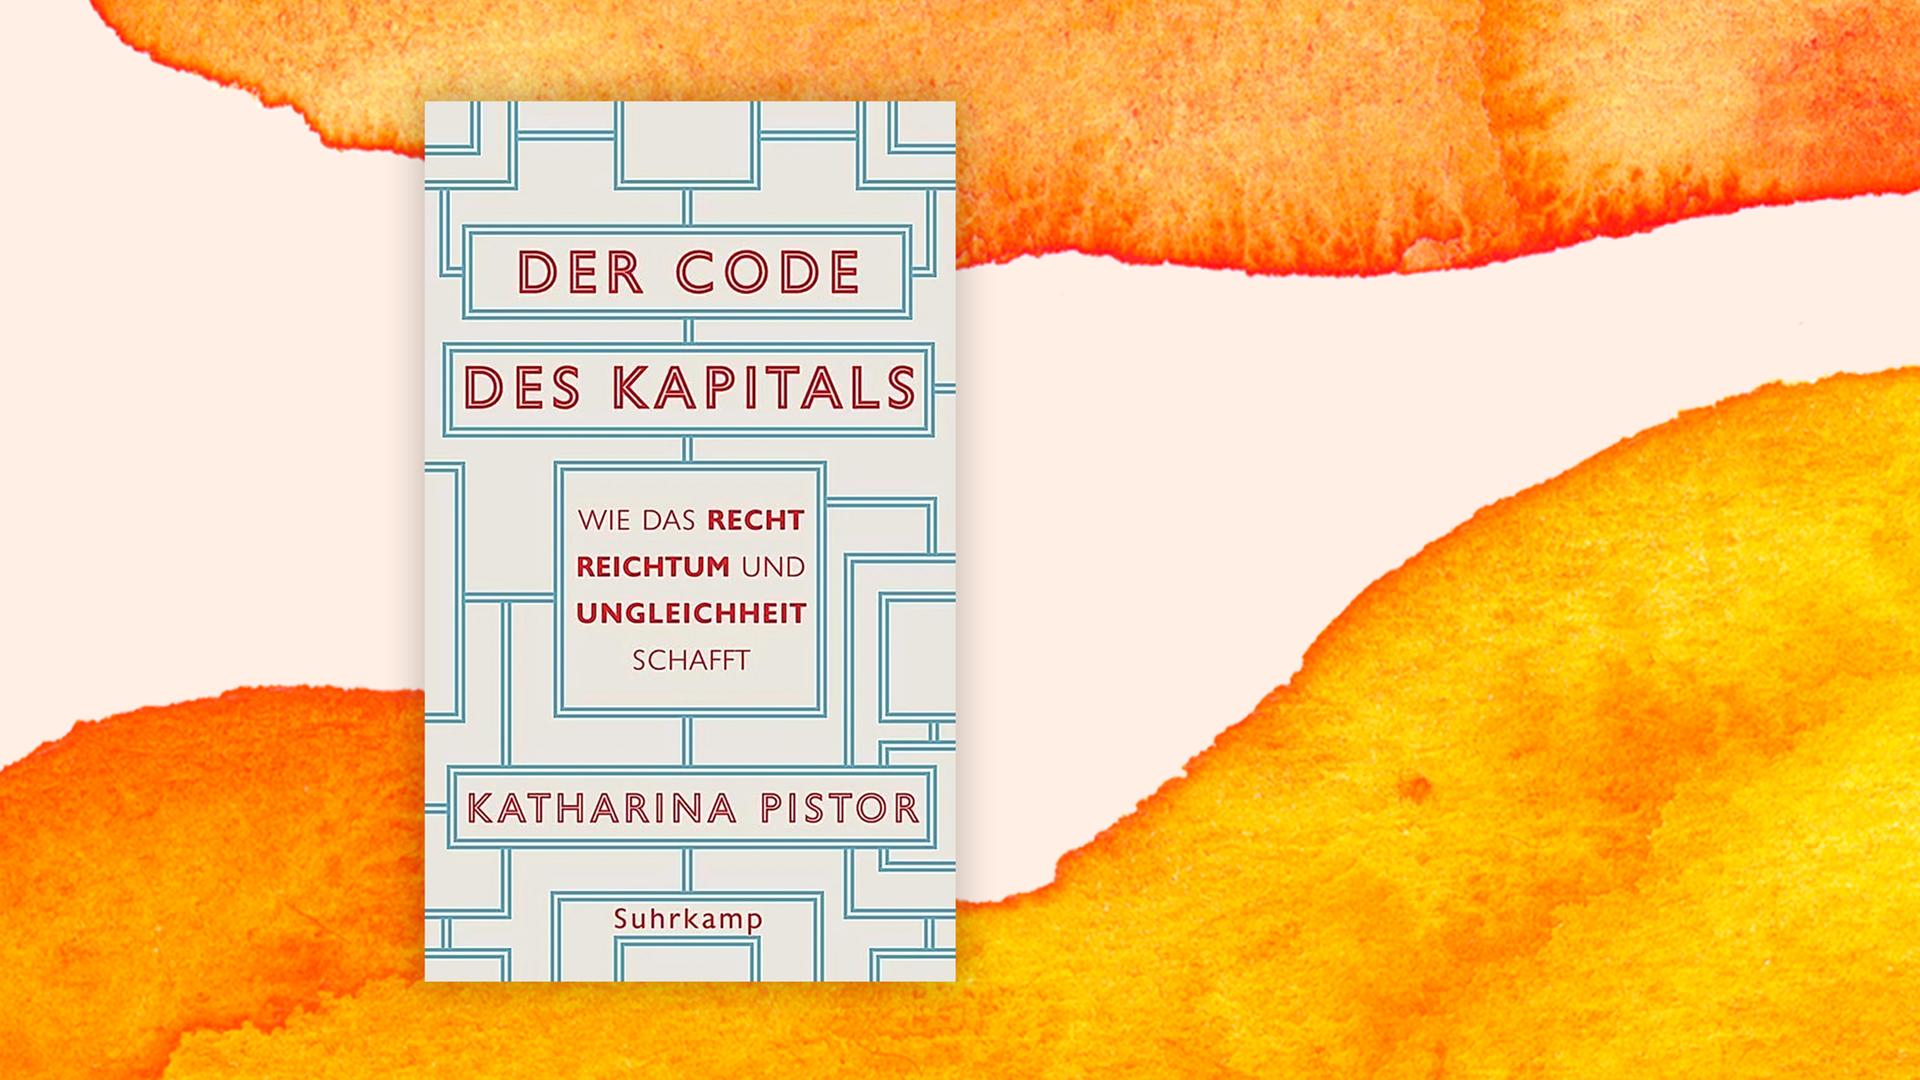 Buchcover: "Der Code des Kapitals" von Katharina Pistor